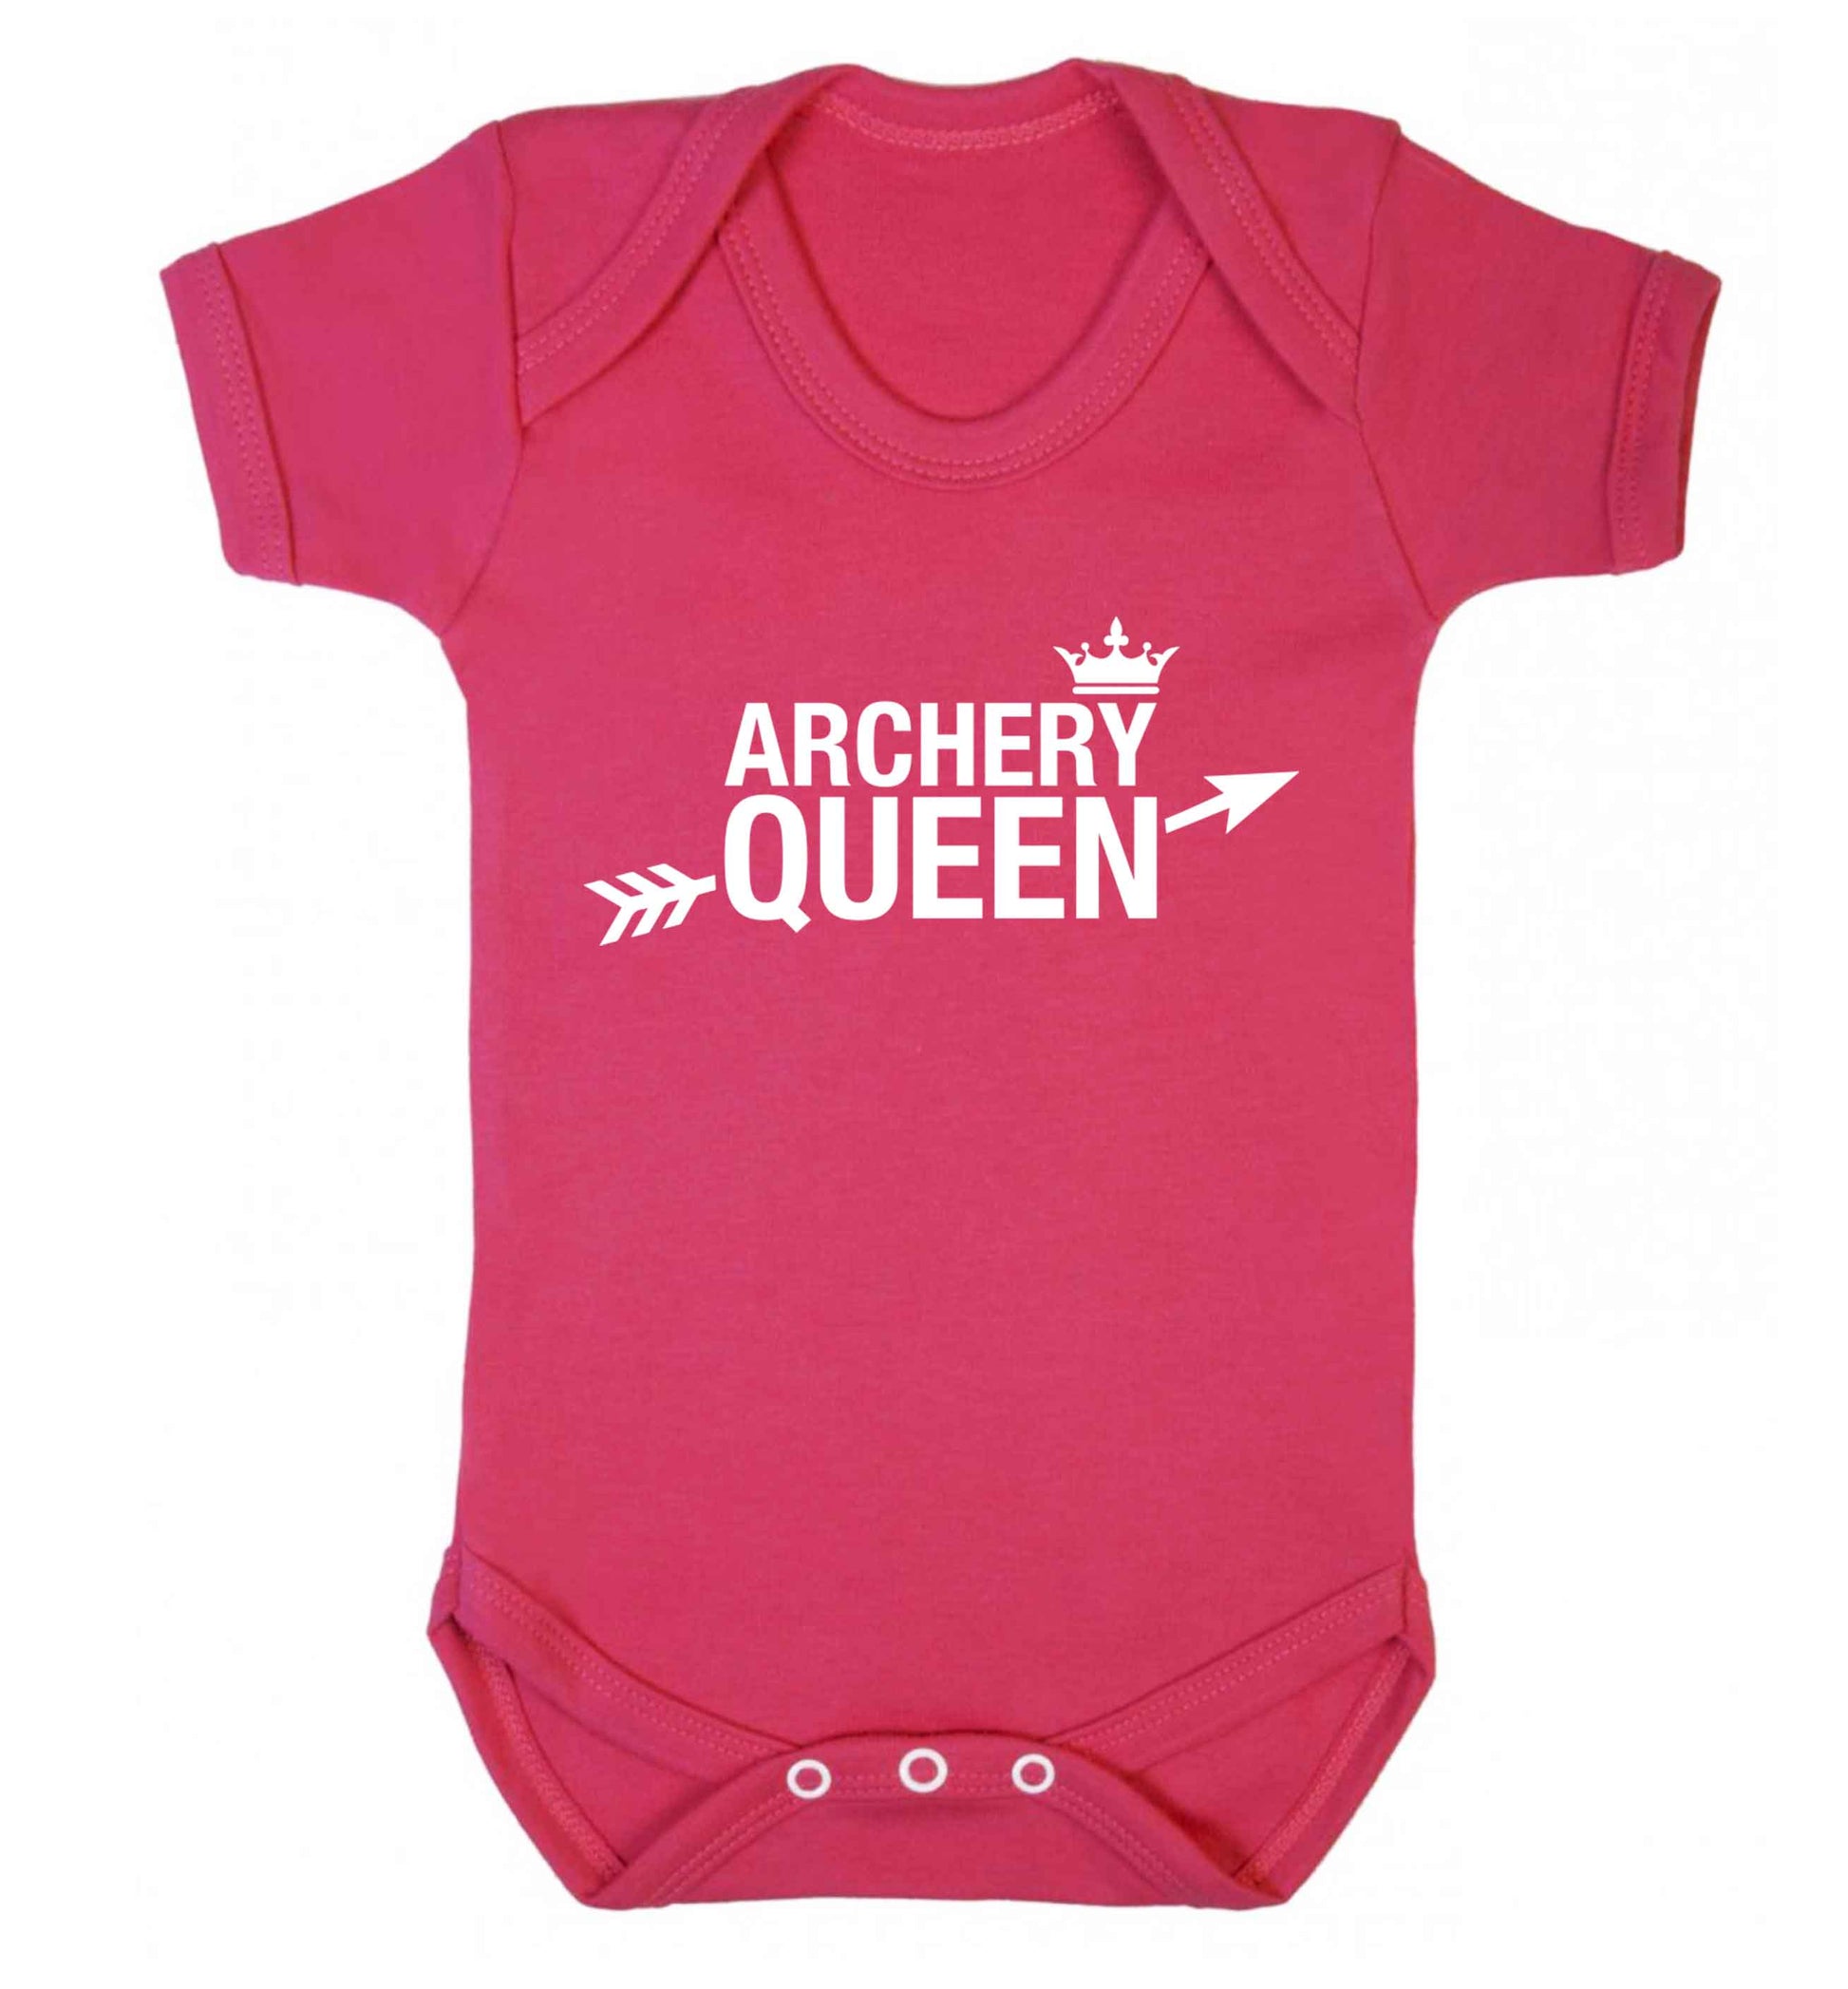 Archery queen Baby Vest dark pink 18-24 months